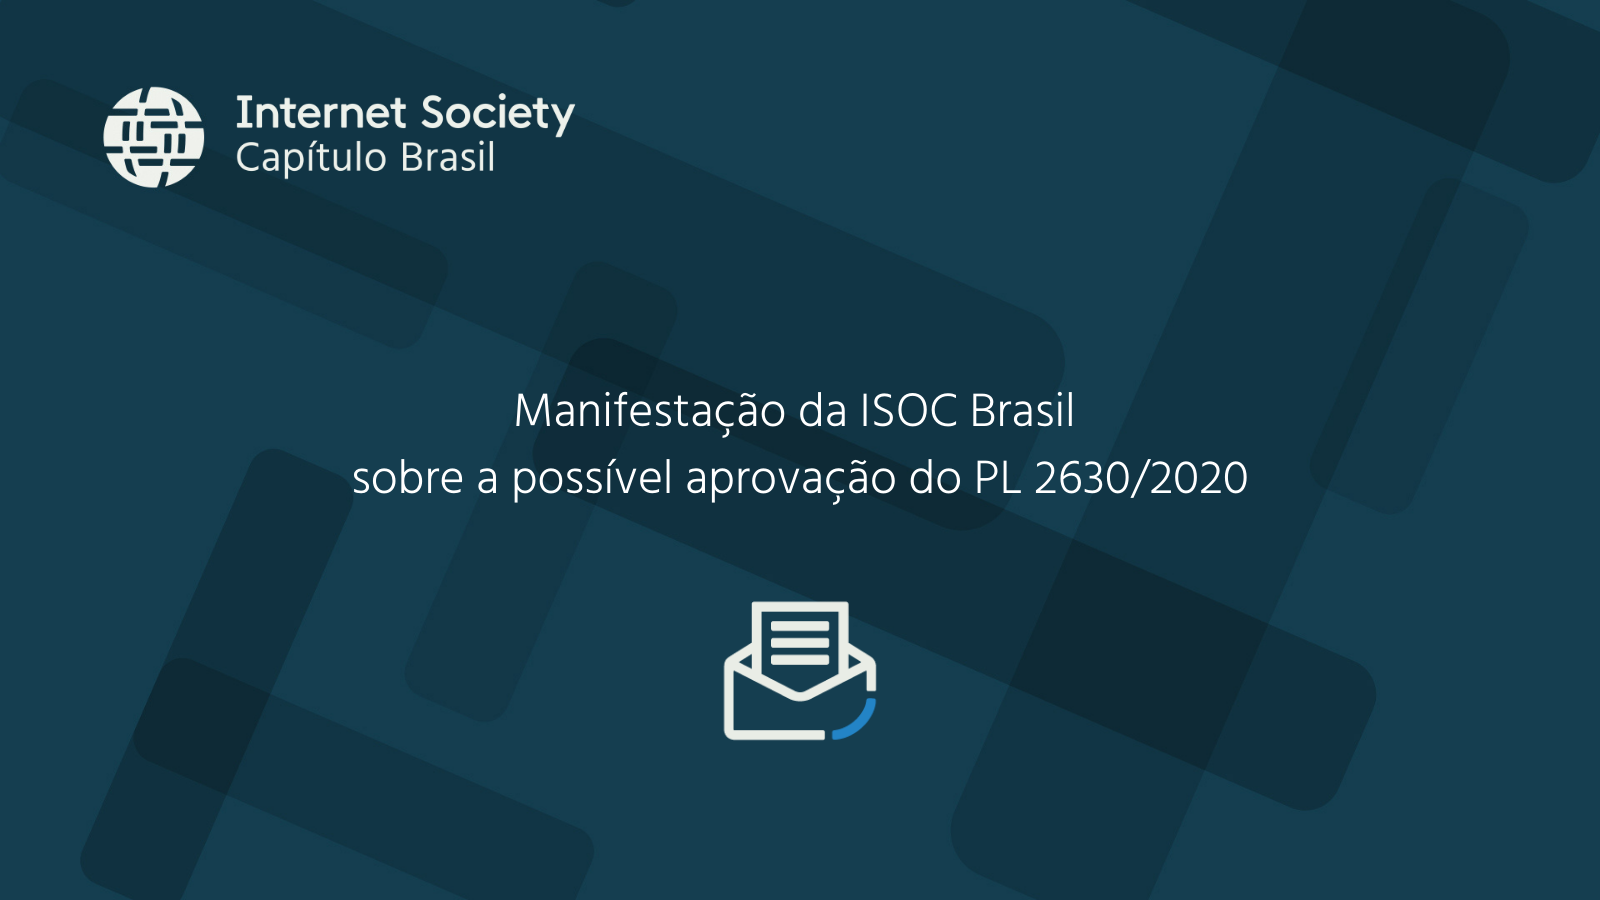 Manifestação da ISOC Brasil sobre a possível aprovação do PL 2630/2020